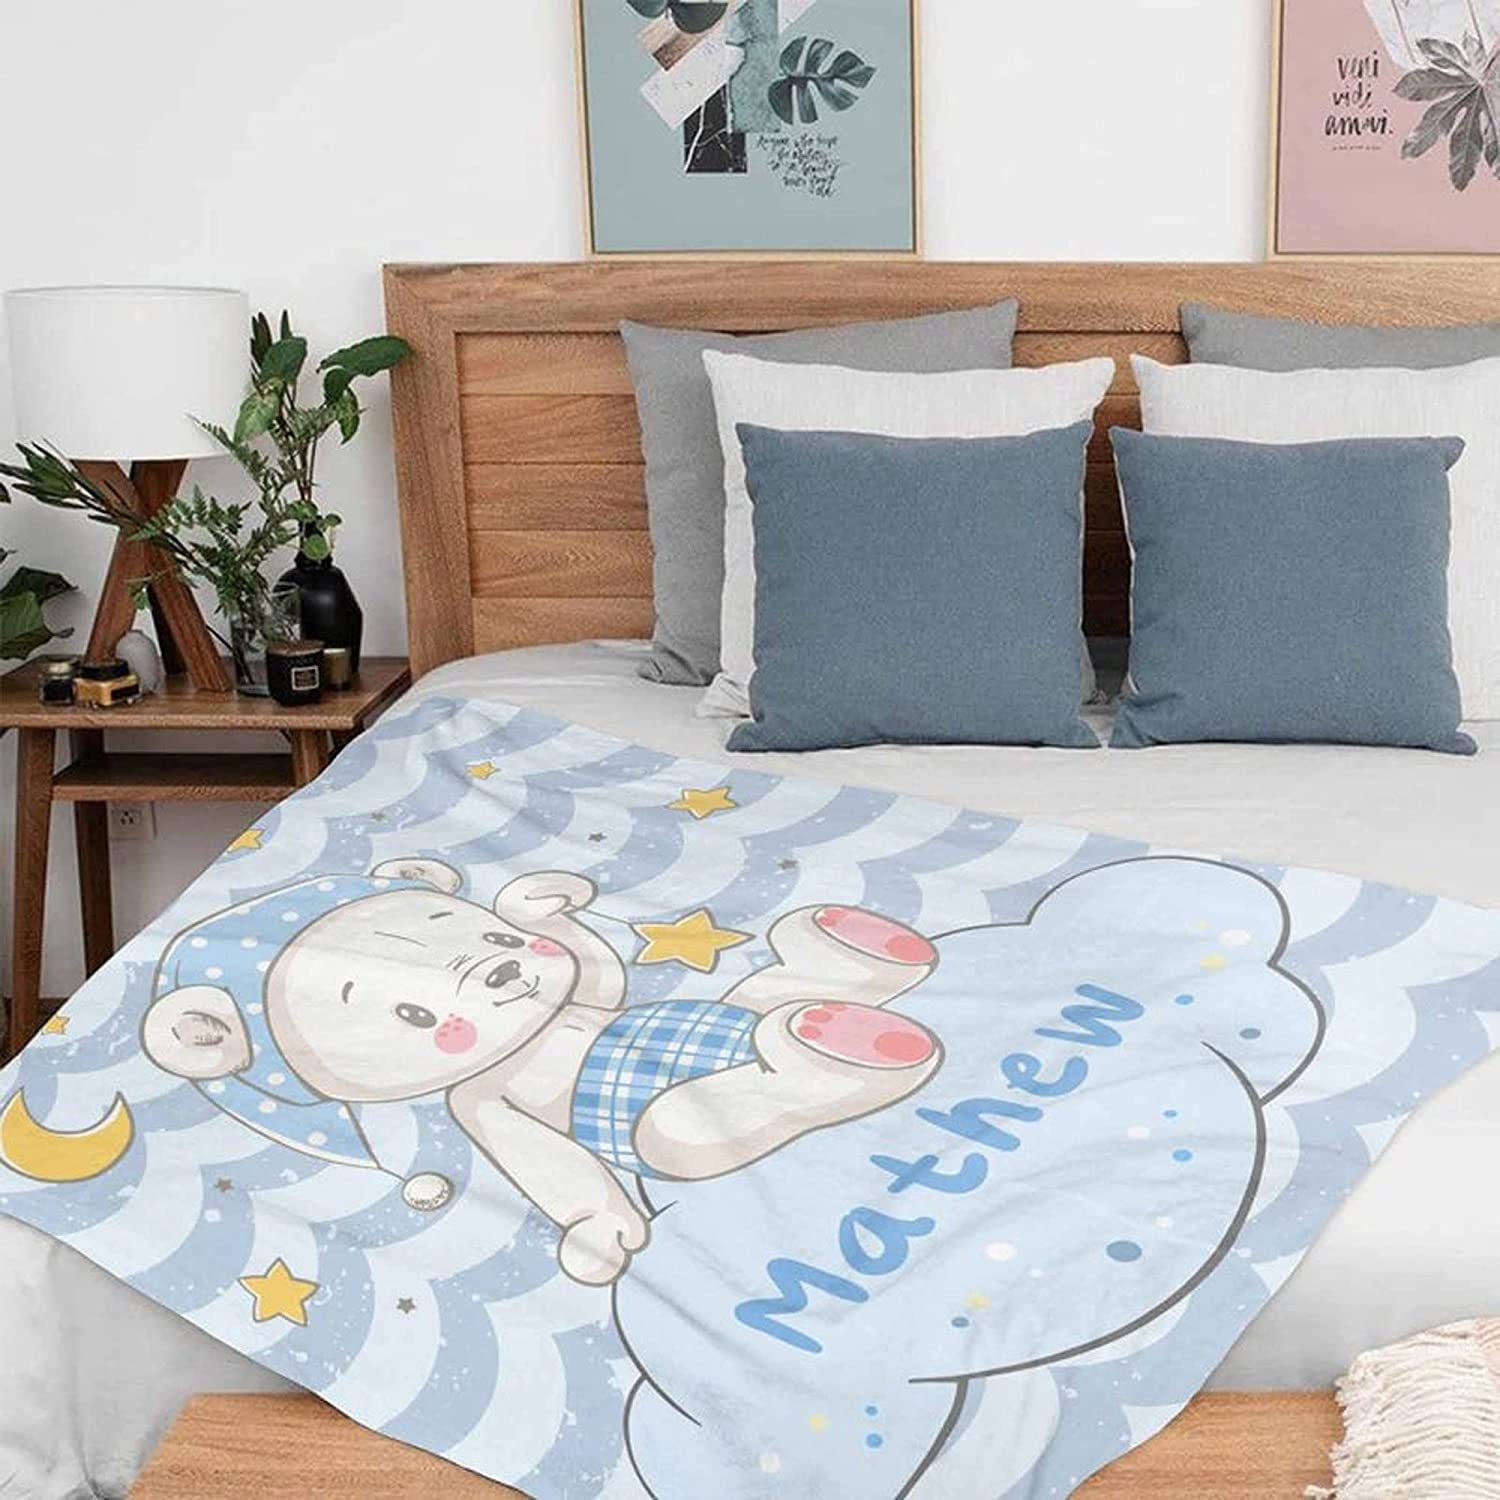 ustom Blanket for Baby Boys Girls , Kawaii Bear Personalized Blankets for Toddler Soft Animal Blanket